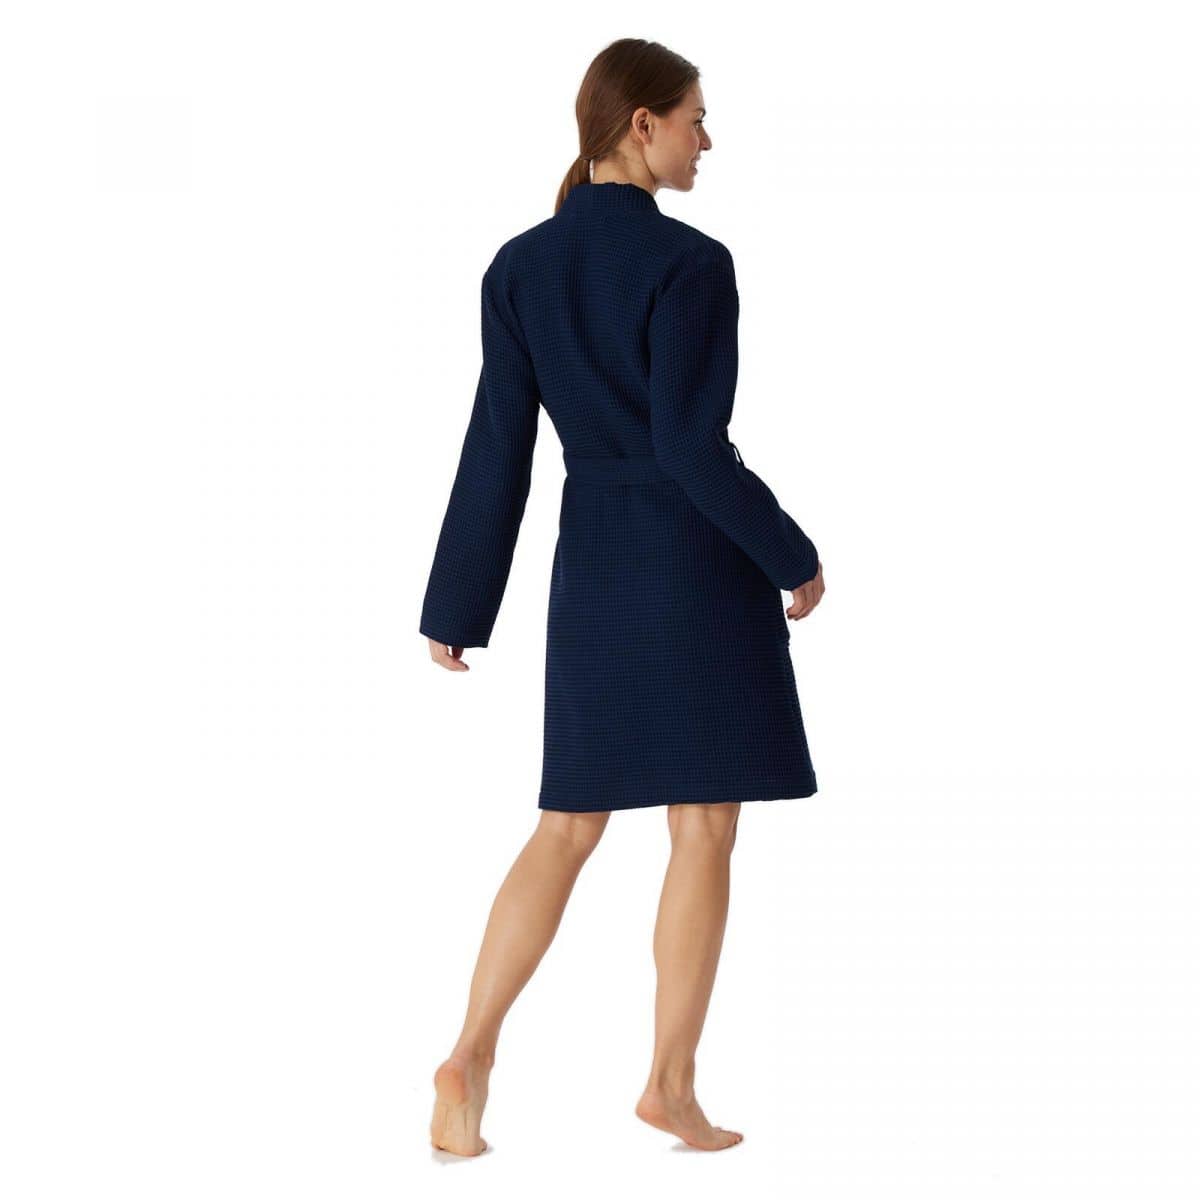 Schiesser Damen Waffel-Pique Bademantel Uni dunkelblau günstig online  kaufen bei Bettwaren Shop